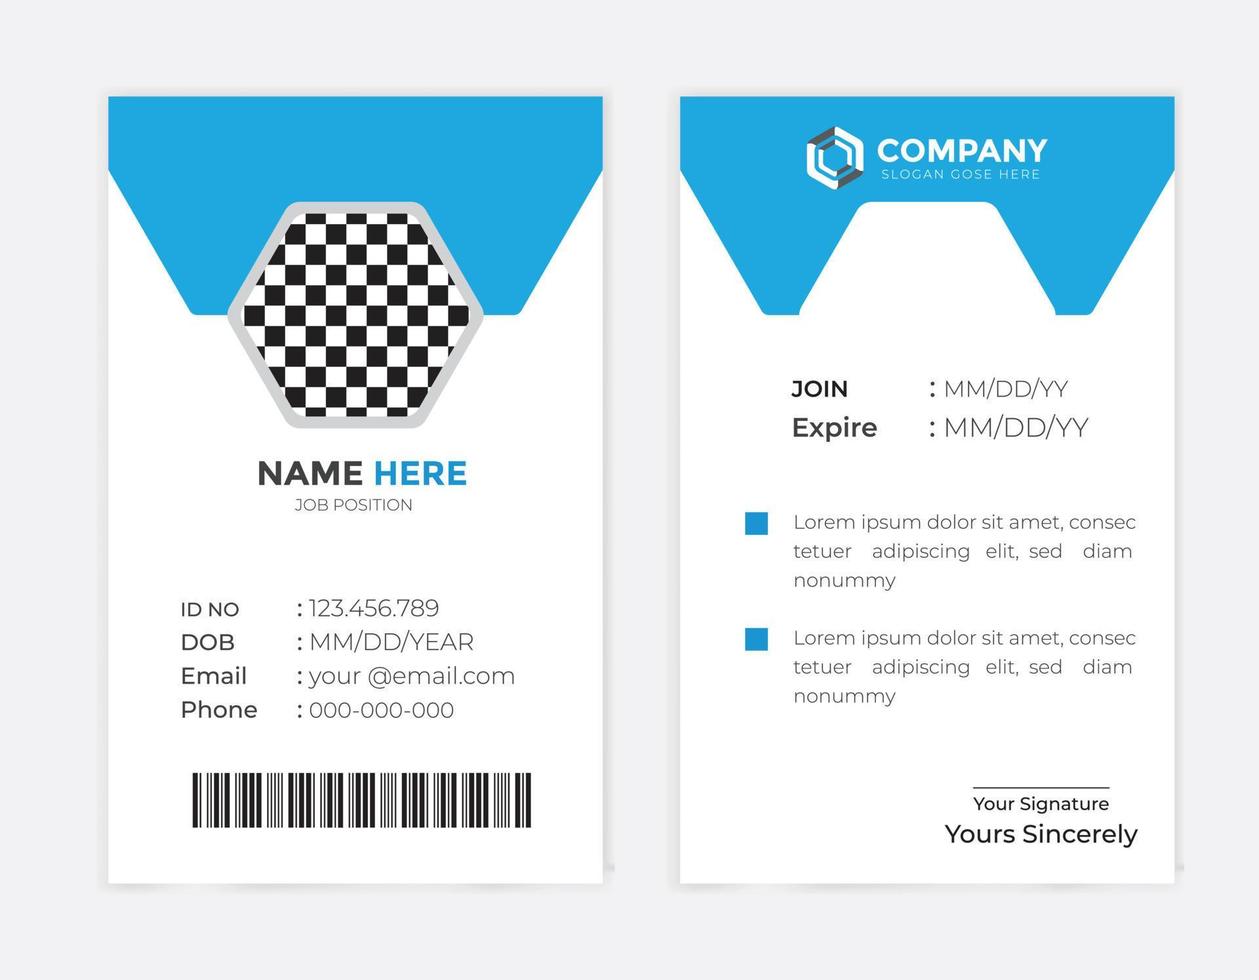 plantilla de tarjeta de identificación de empleado de empresa corporativa moderna y creativa vector